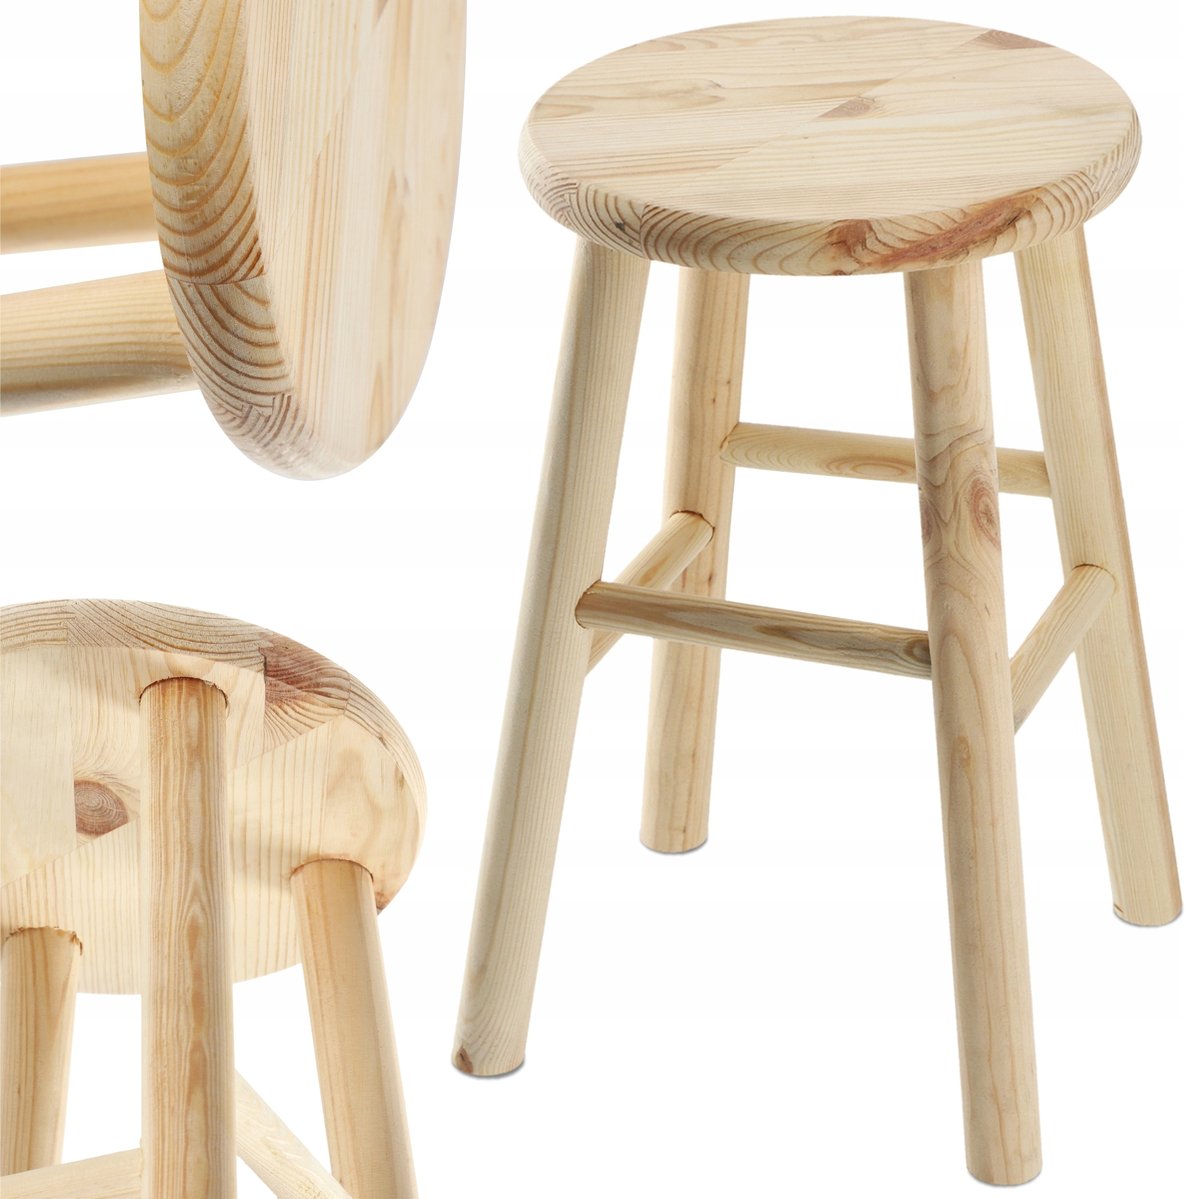 Zdjęcia - Krzesło Kadax Taboret Drewniany Kuchenny Stołek Solidny 46 cm 